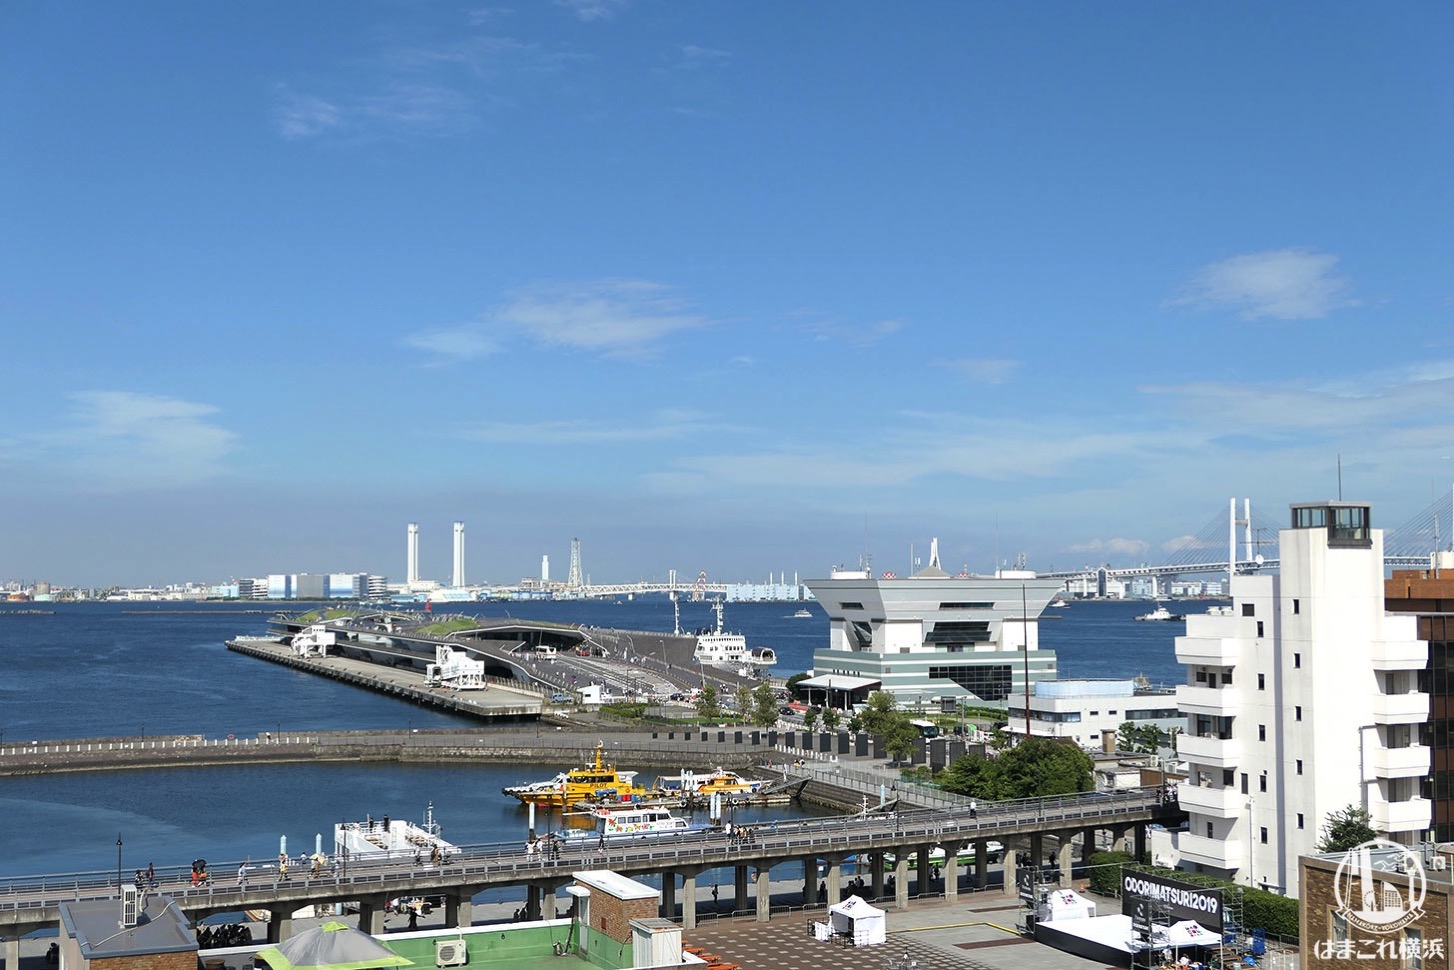 神奈川県庁本庁舎公開 屋上から見た横浜港